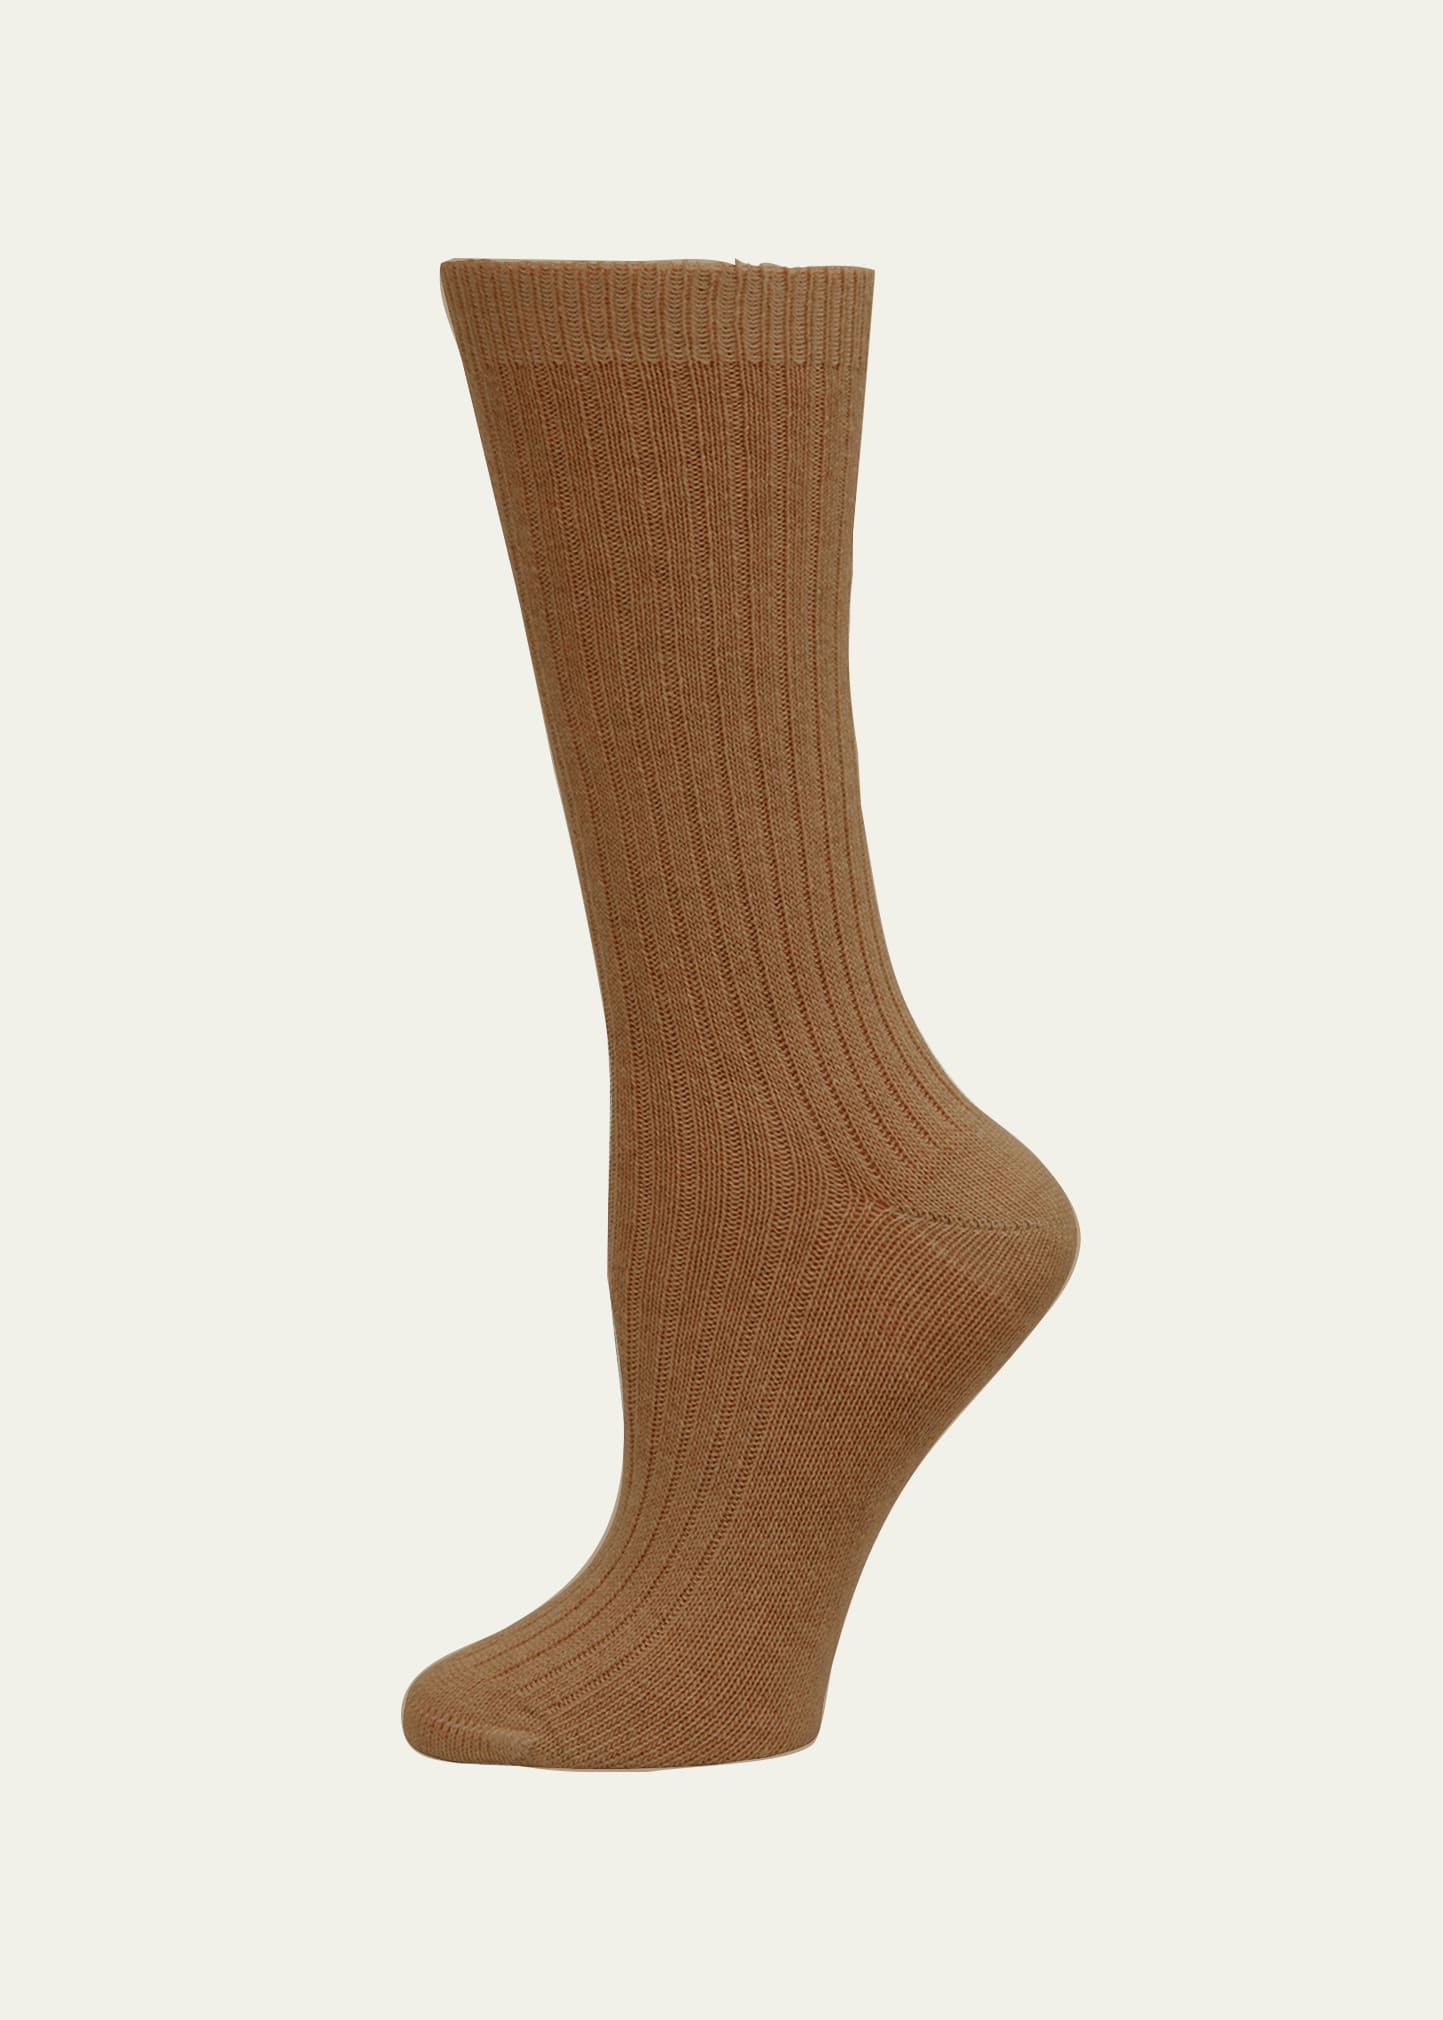 Hanro Accessories Socks In Cinnamon